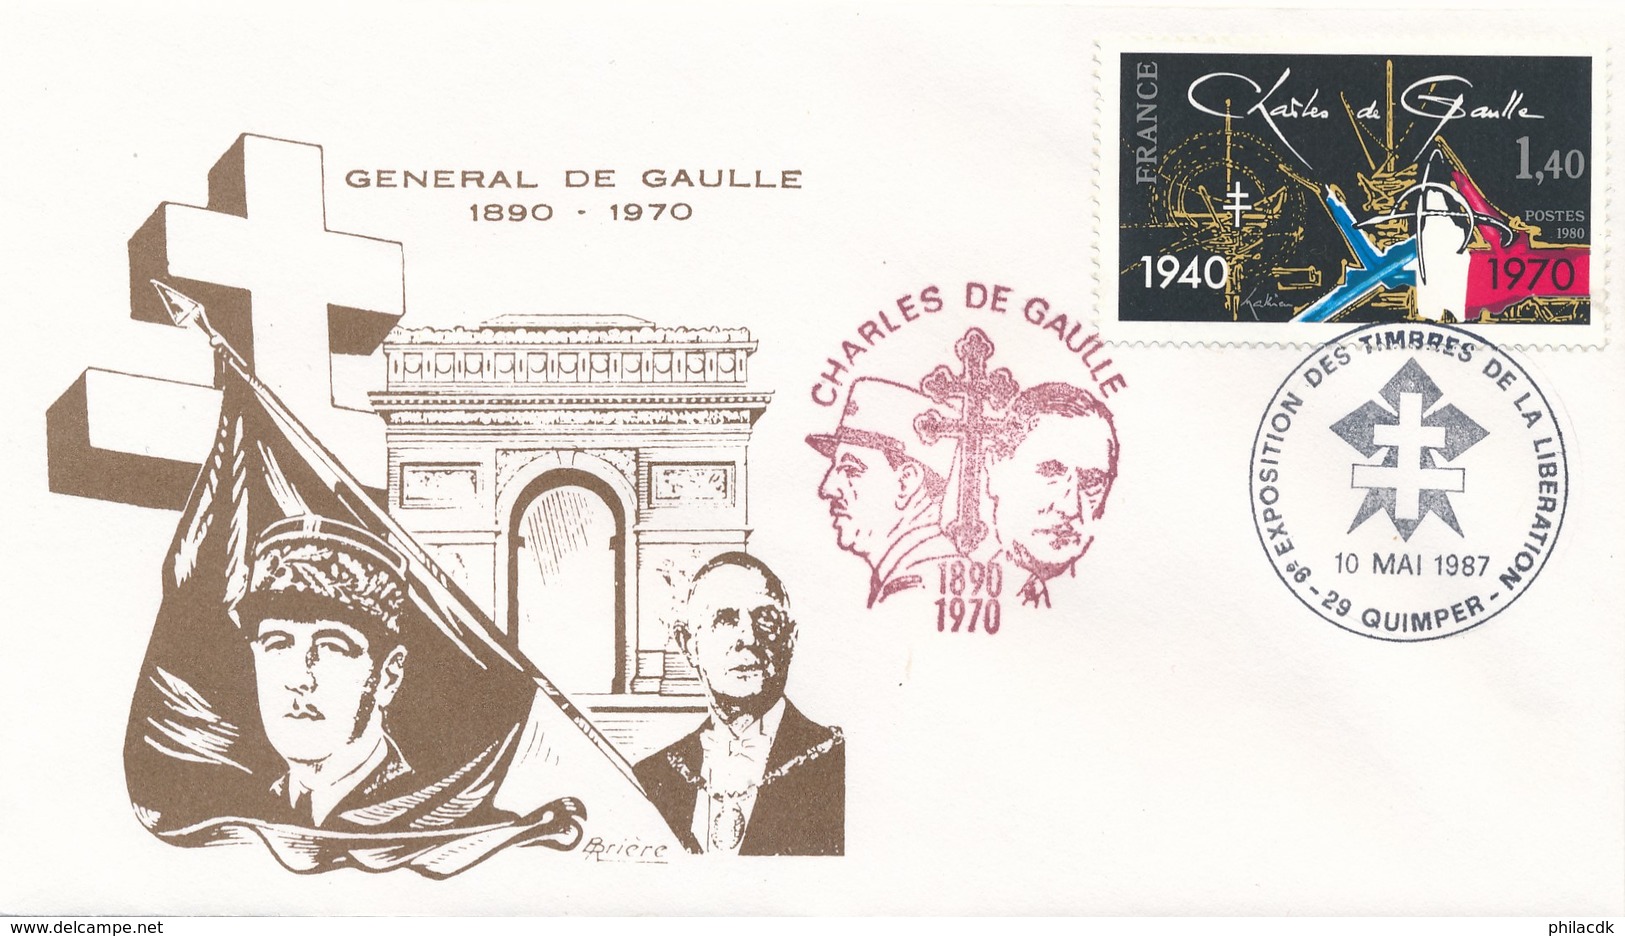 FRANCE - ENVELOPPE 9EME EXPOSITION DES TIMBRES DE LA LIBERATION 10 MAI 1987 QUIMPER GENERAL DE GAULLE - 2. Weltkrieg